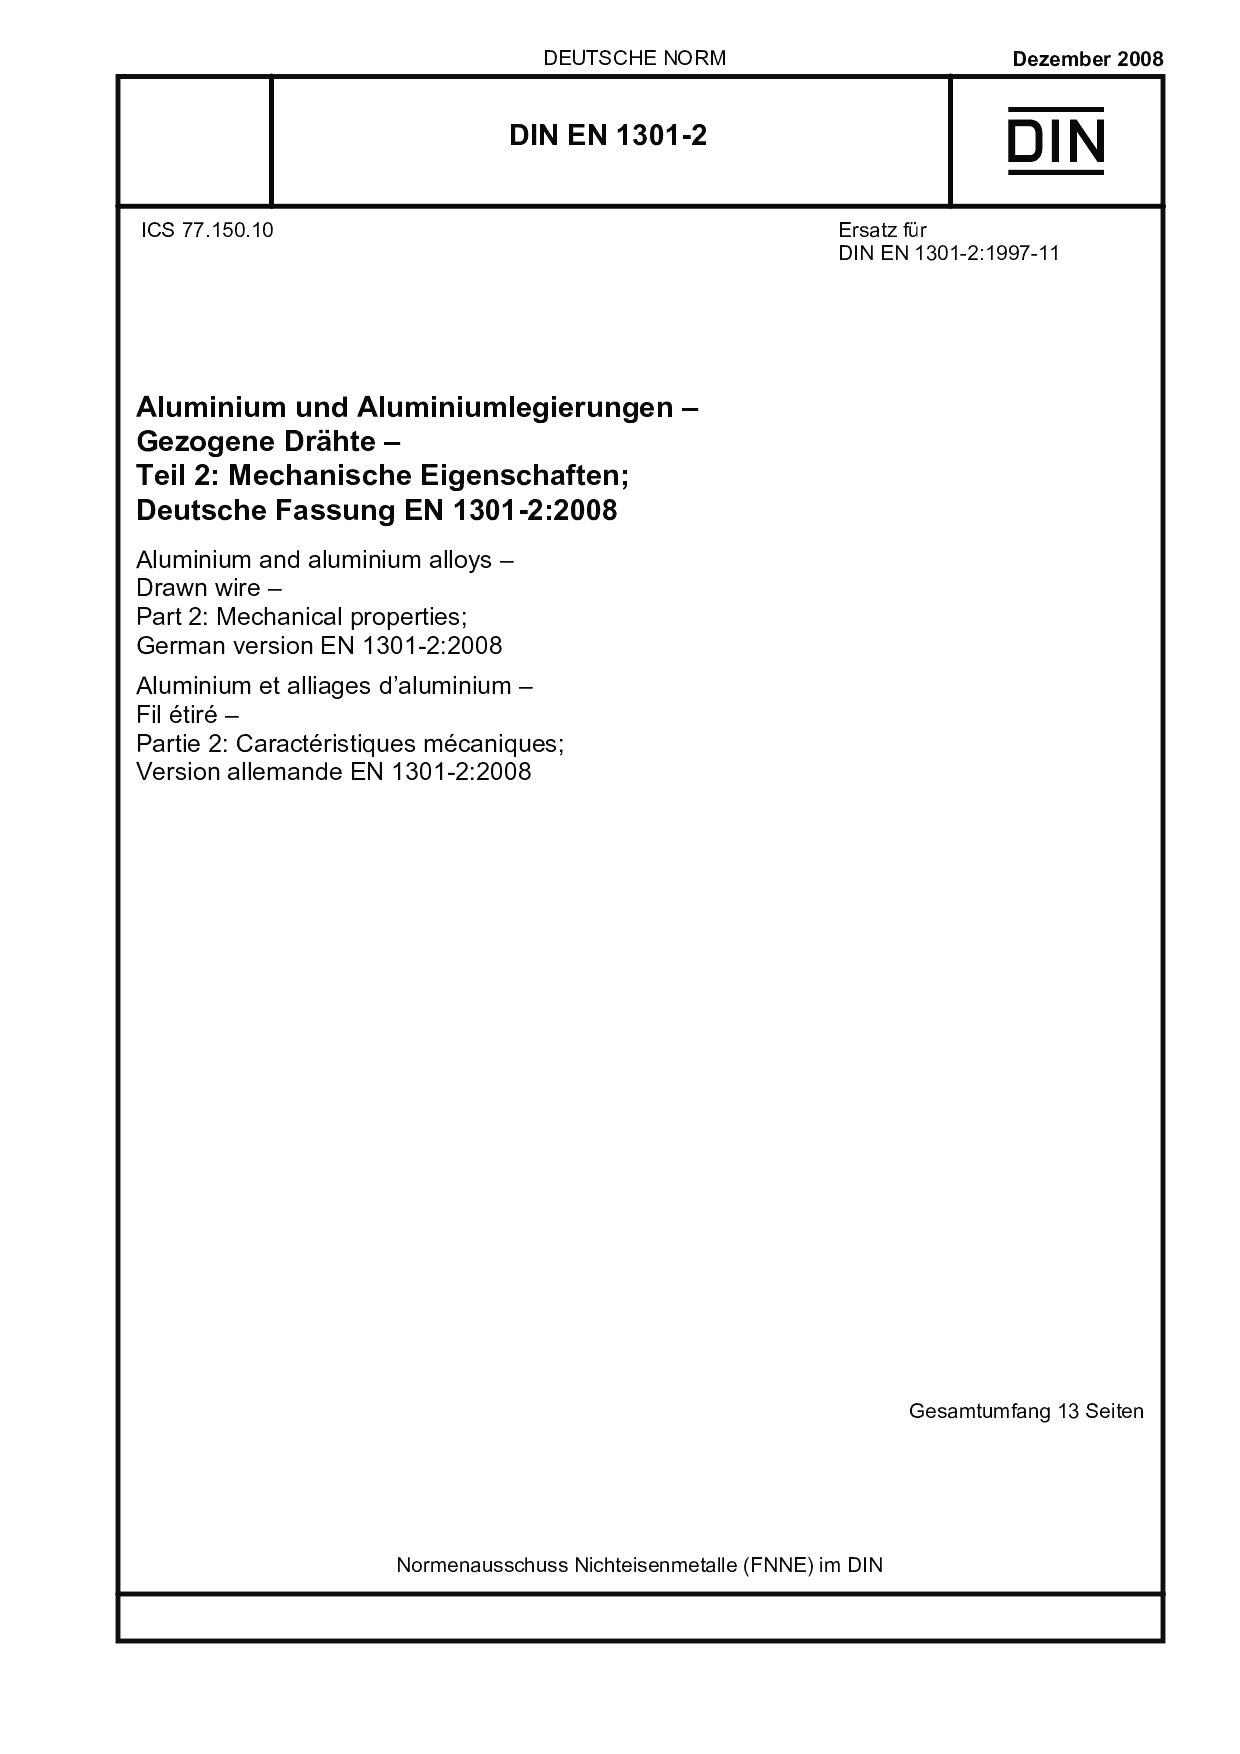 DIN EN 1301-2:2008封面图